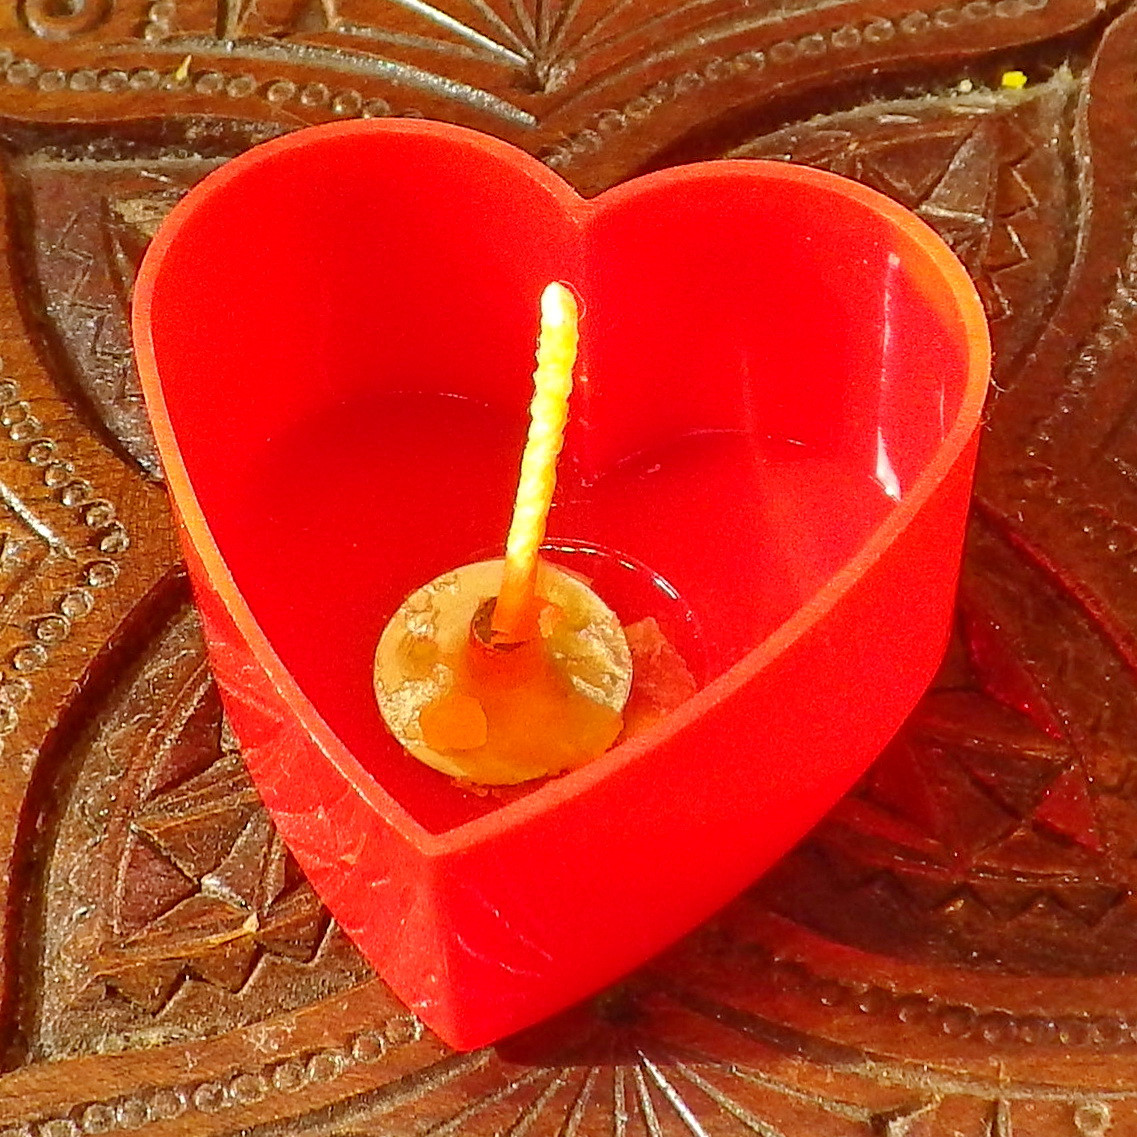 Набор для изготовления чайной свечи Валентинка (красный контейнер чайной свечи, фиксатор фитиля, фитиль)